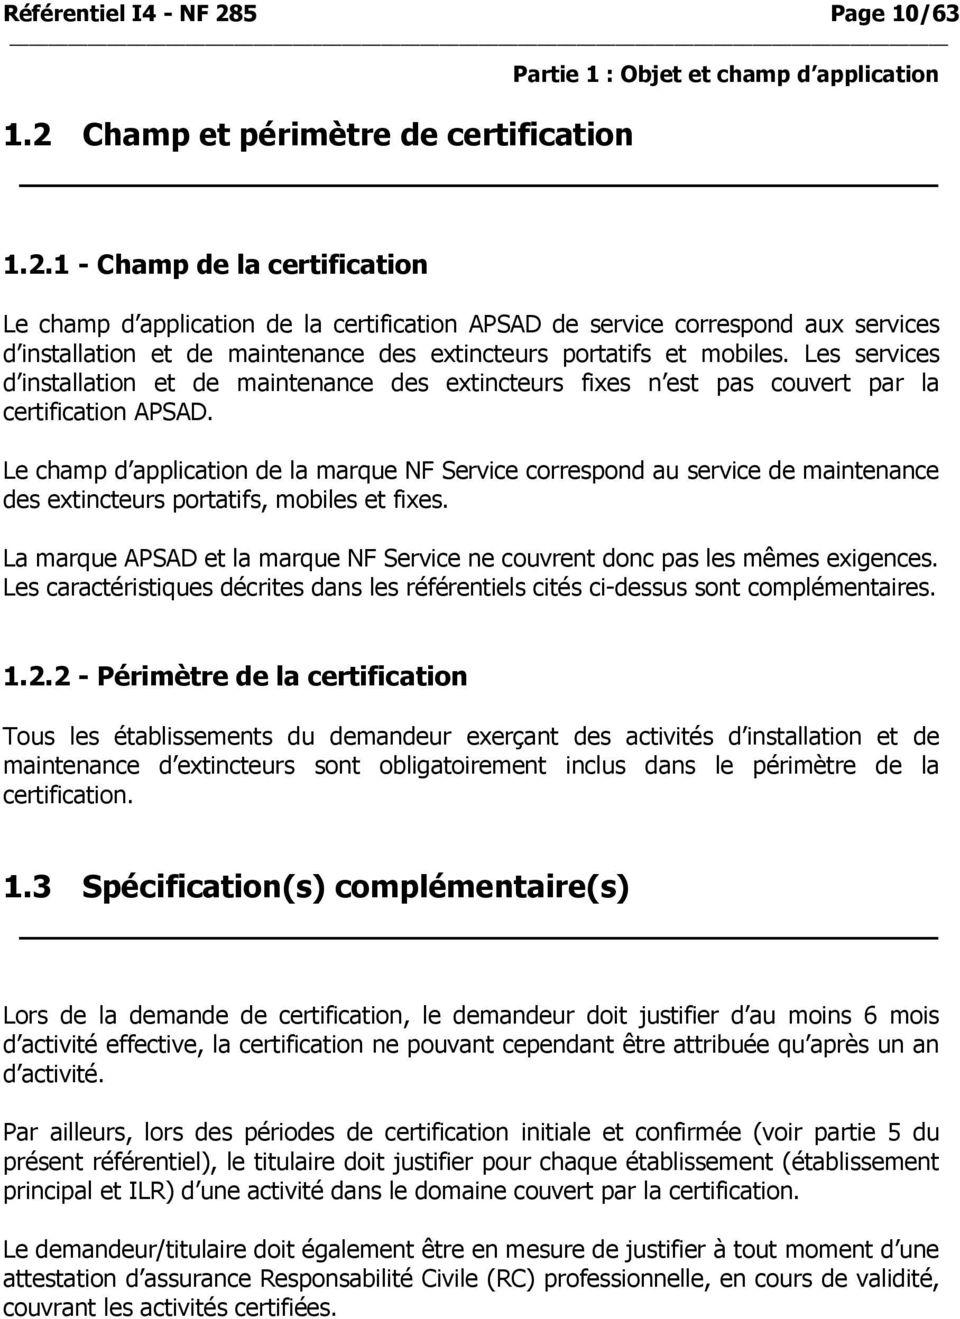 Champ et périmètre de certification 1.2.